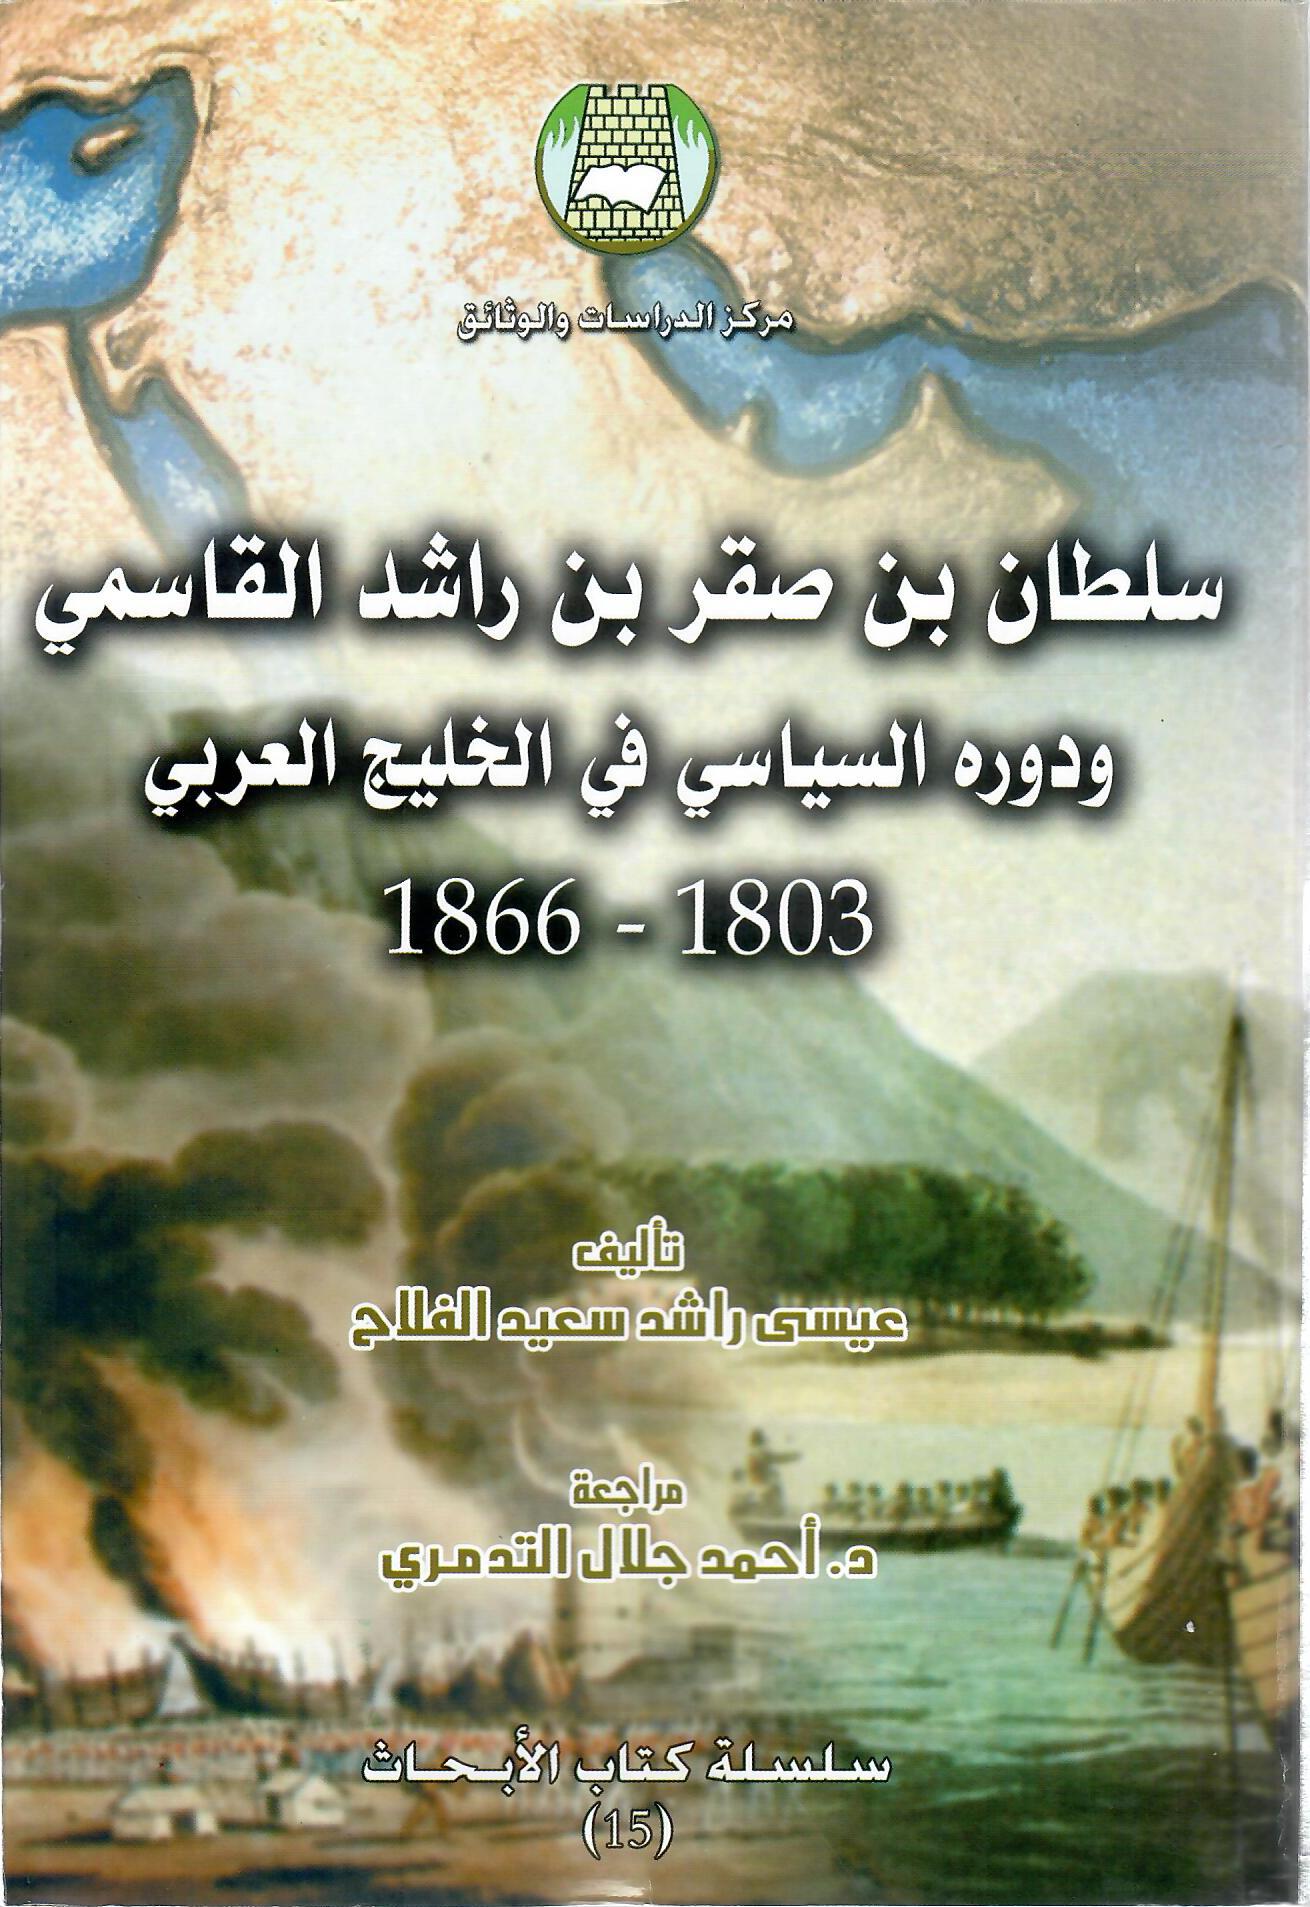 سلطان بن صقر بن راشد القاسمي ودورة السياسي في الخليج العربي 1803 -1866